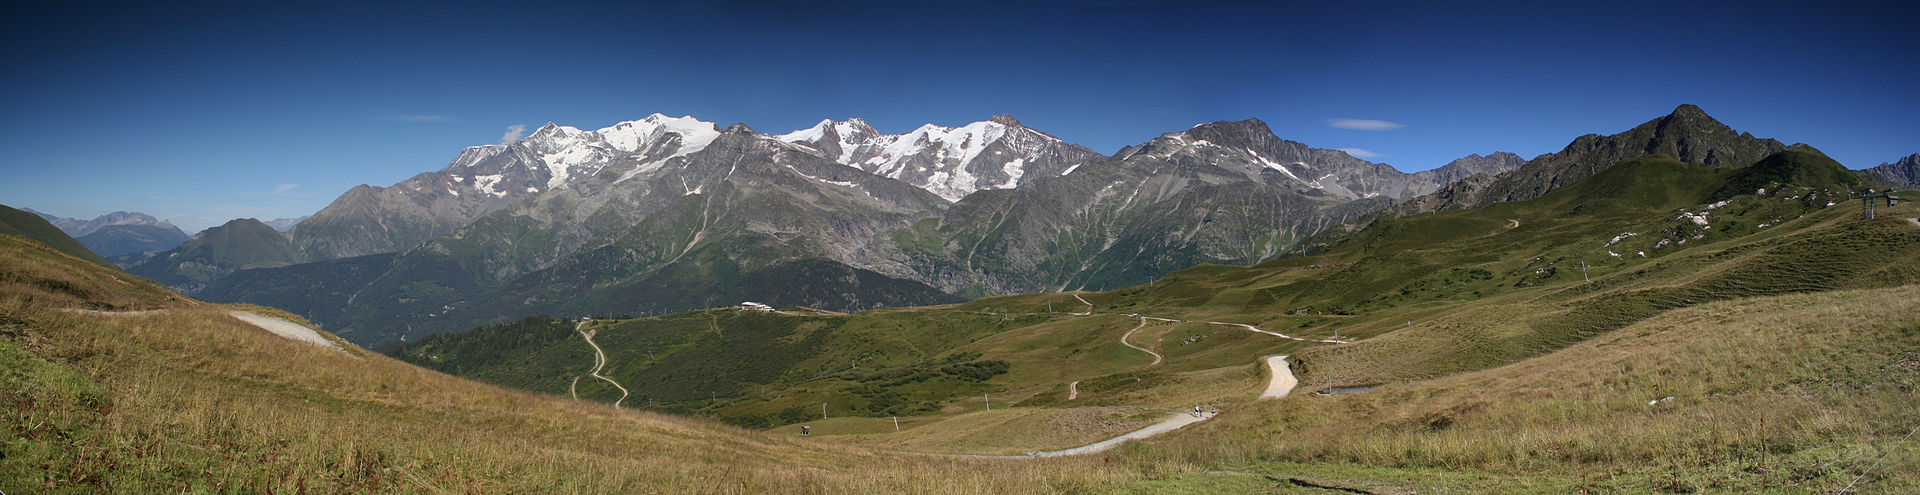 Le massif du Mont-Blanc en images